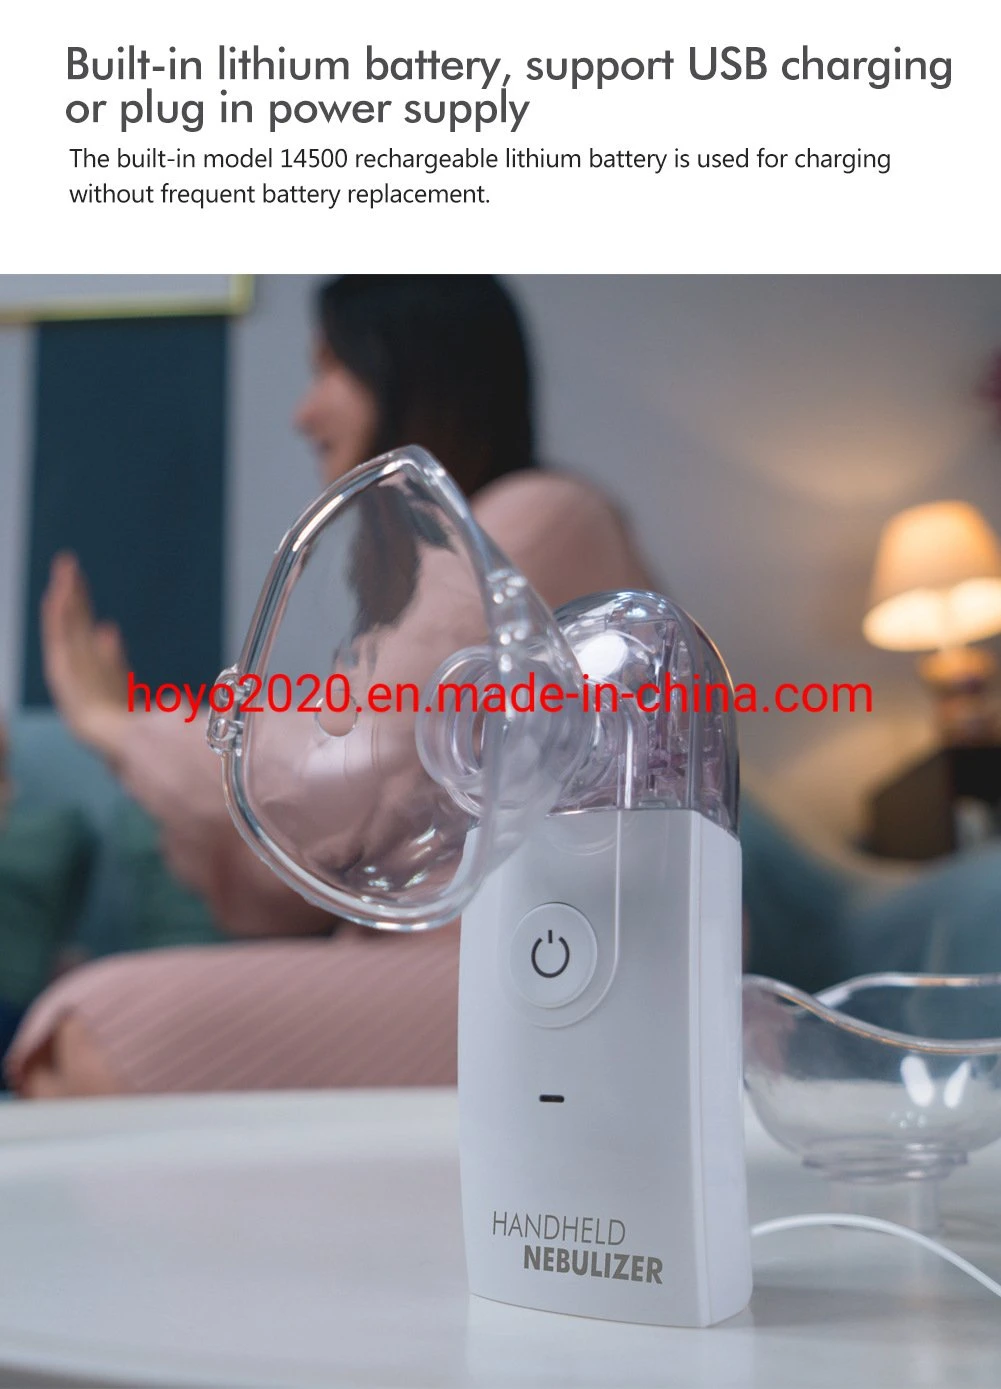 Portable Handheld Mesh Nebulizer Mini Handheld Mesh Nebulizer Adults Handheld Portable Nebulizer